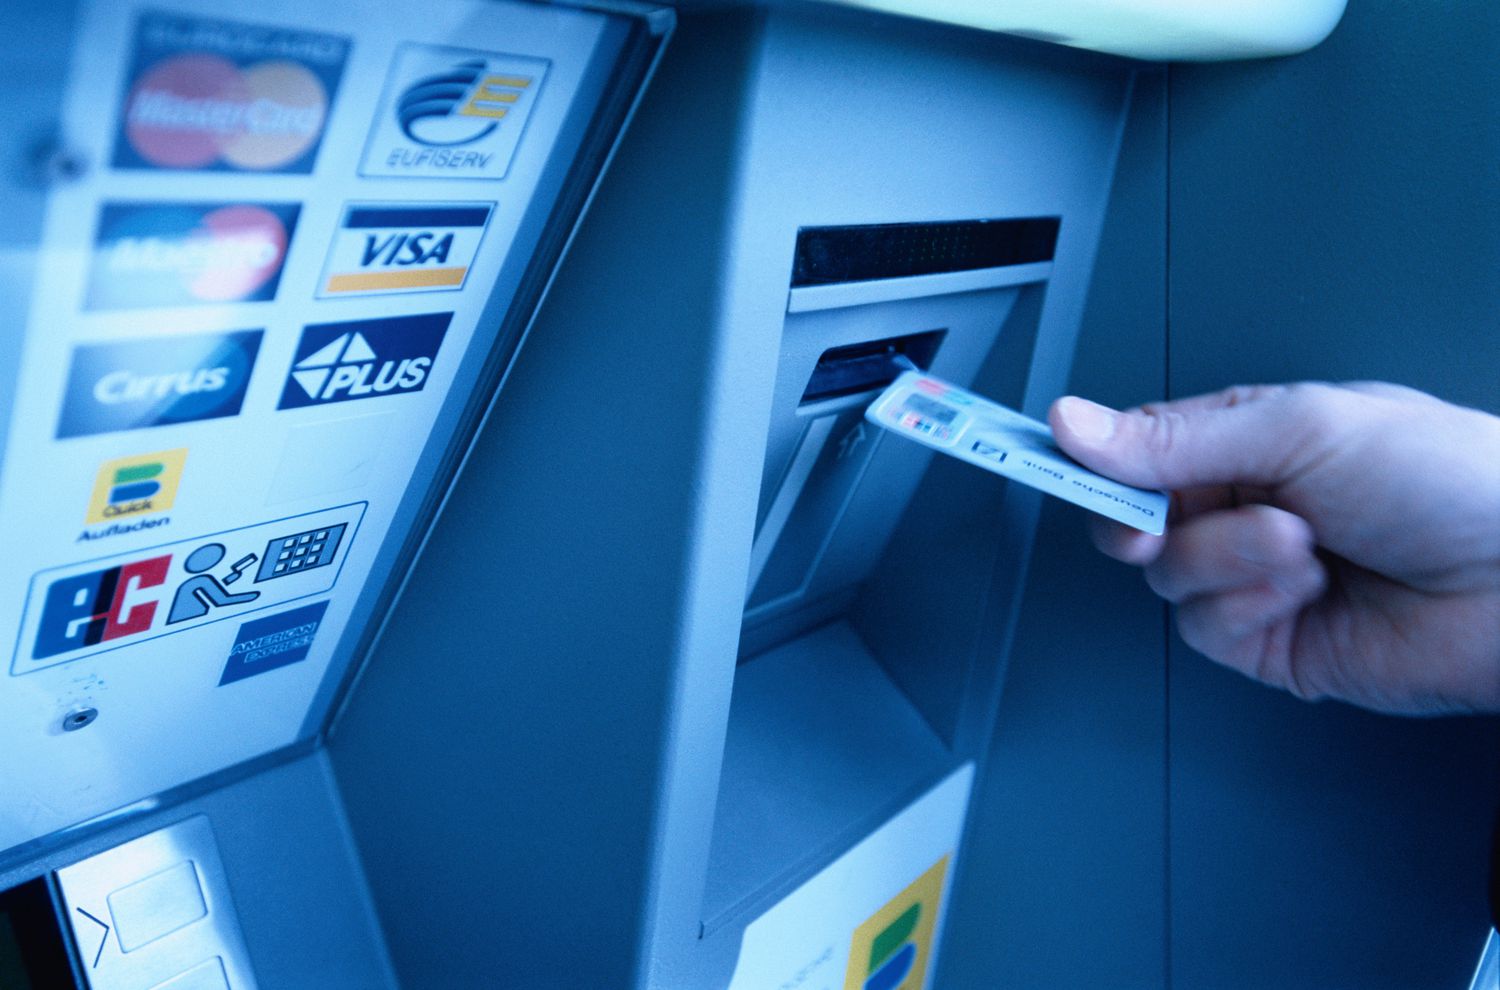 Find an ATM
